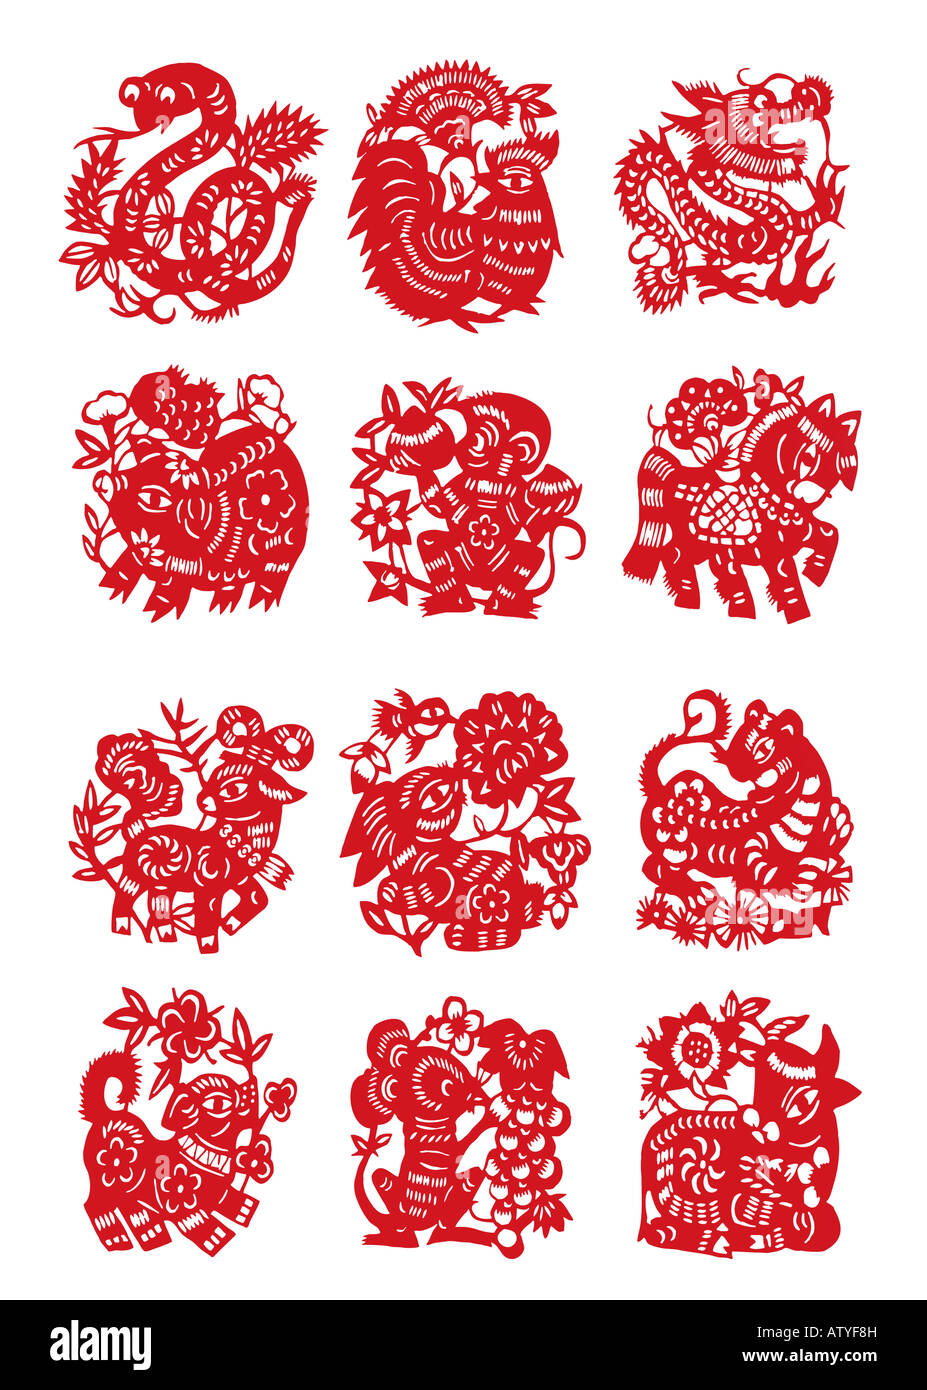 Coupe papier douze chinois signe Animal chèvre cochon serpent singe rat chien coak rabit cheval dragon tiger et bovins with clipping path Banque D'Images